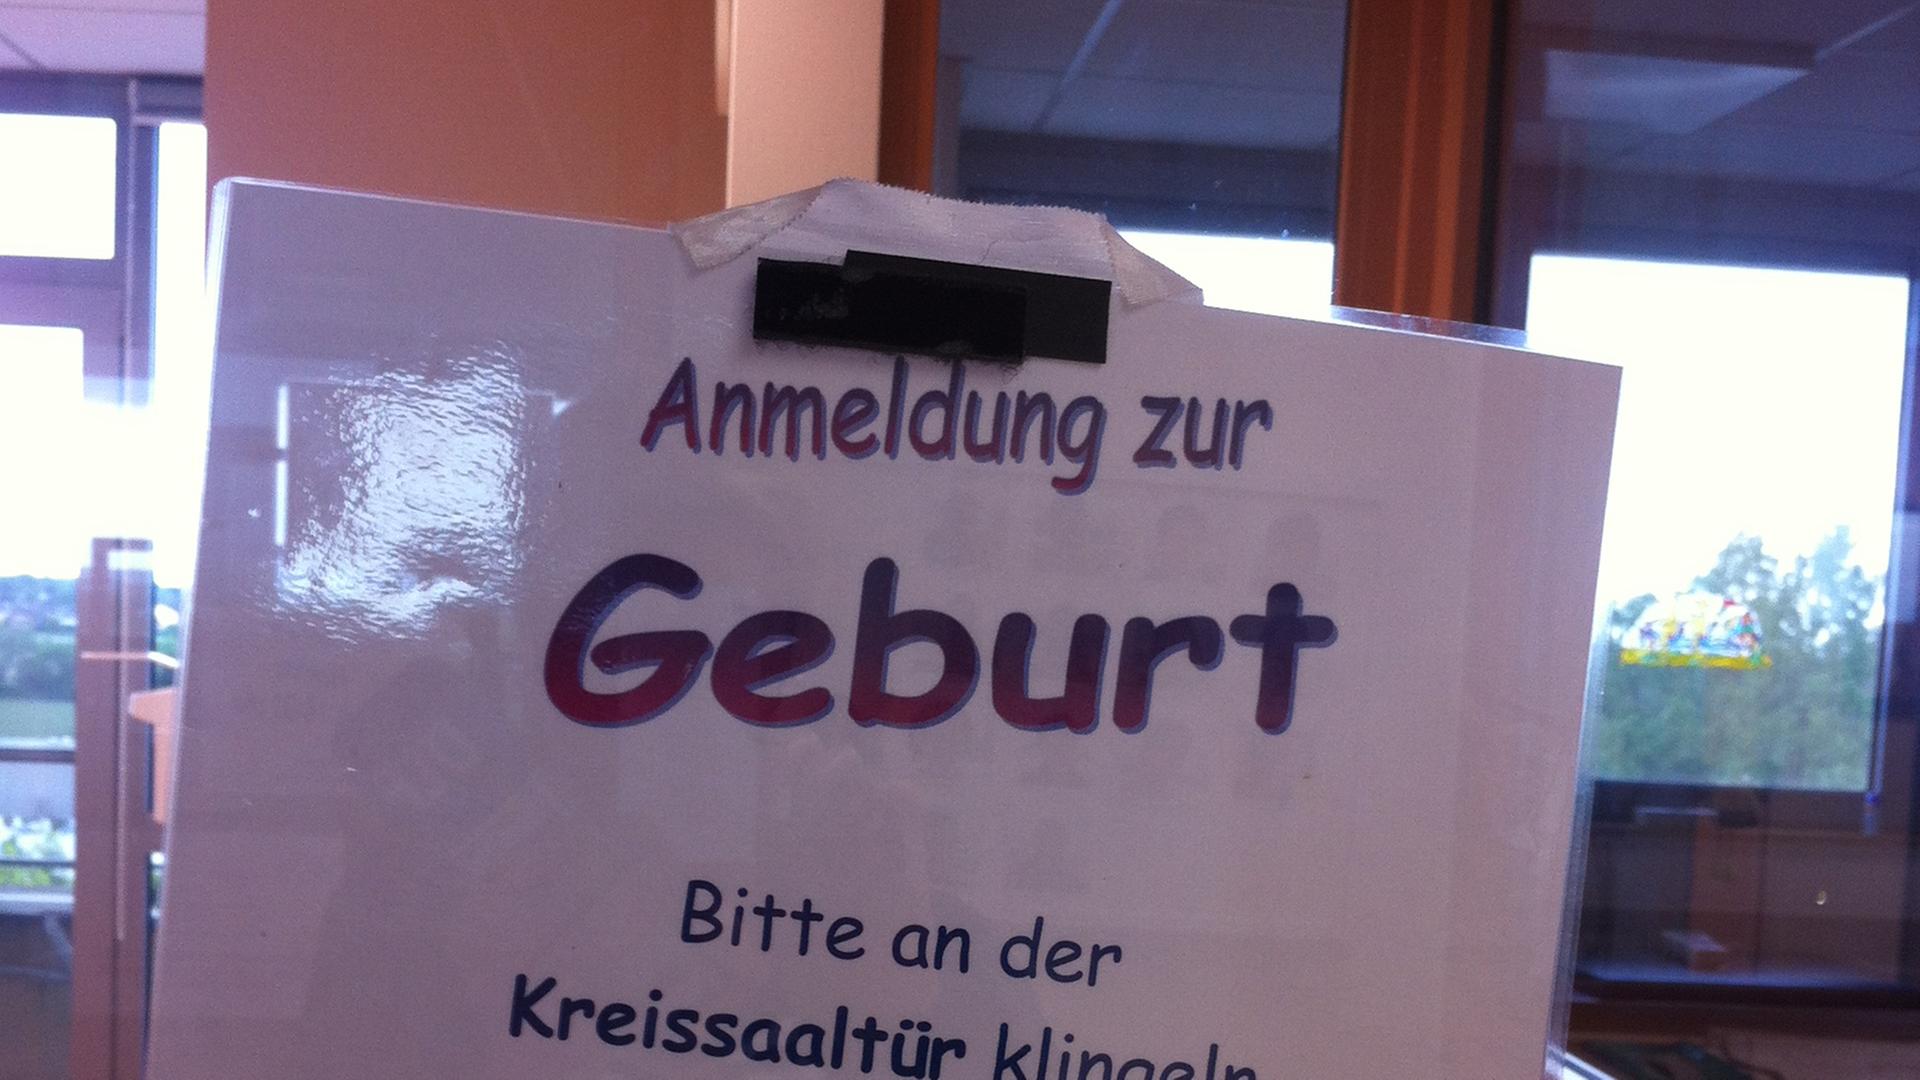 Ein Schild auf dem "Anmeldung zur Geburt Bitte an der Kreissaaltür klingeln" steht.